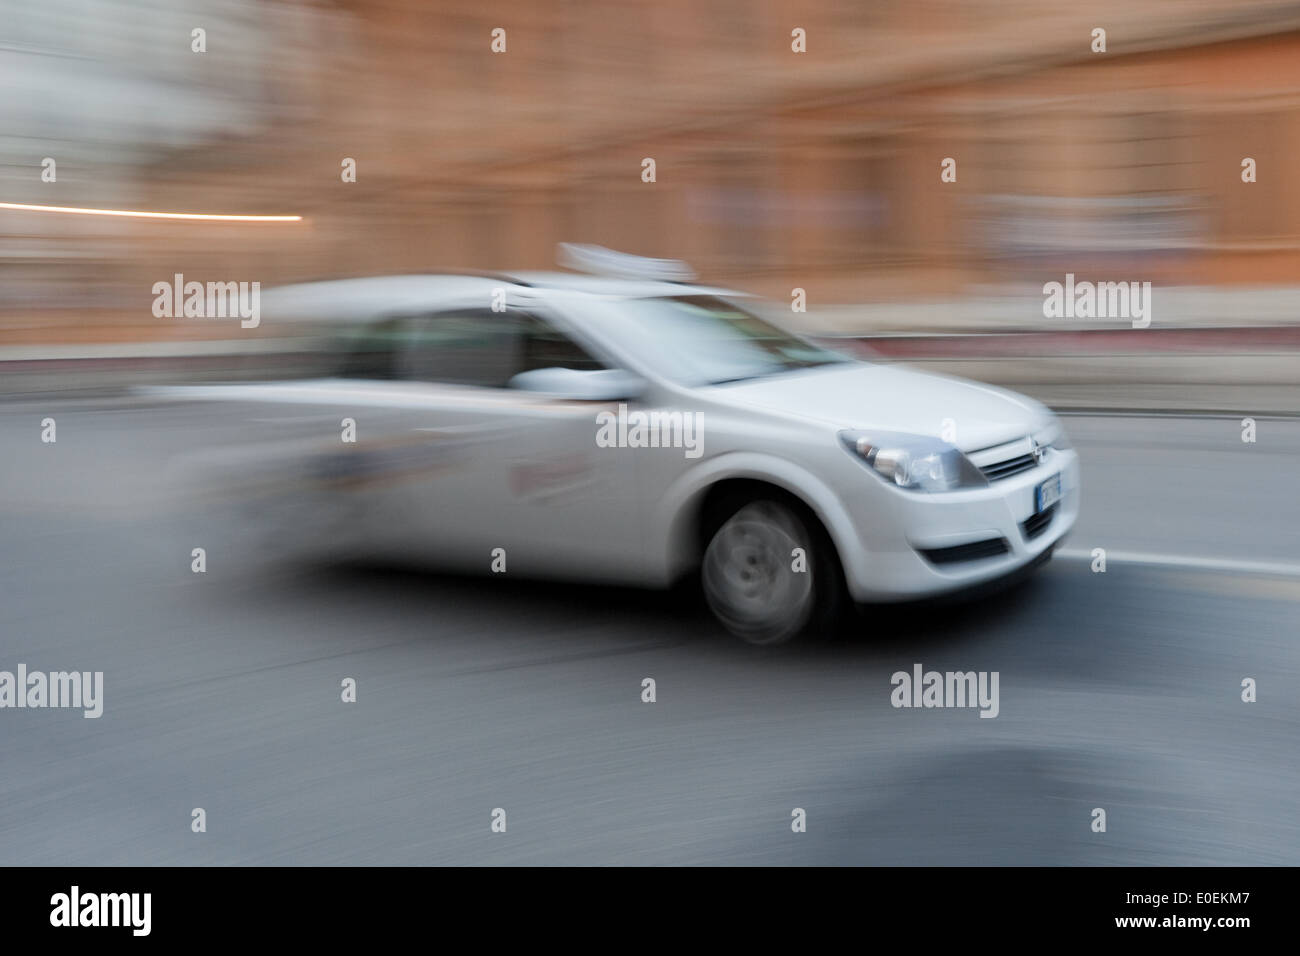 Schnell fahrendes Auto - Speeding car Stock Photo